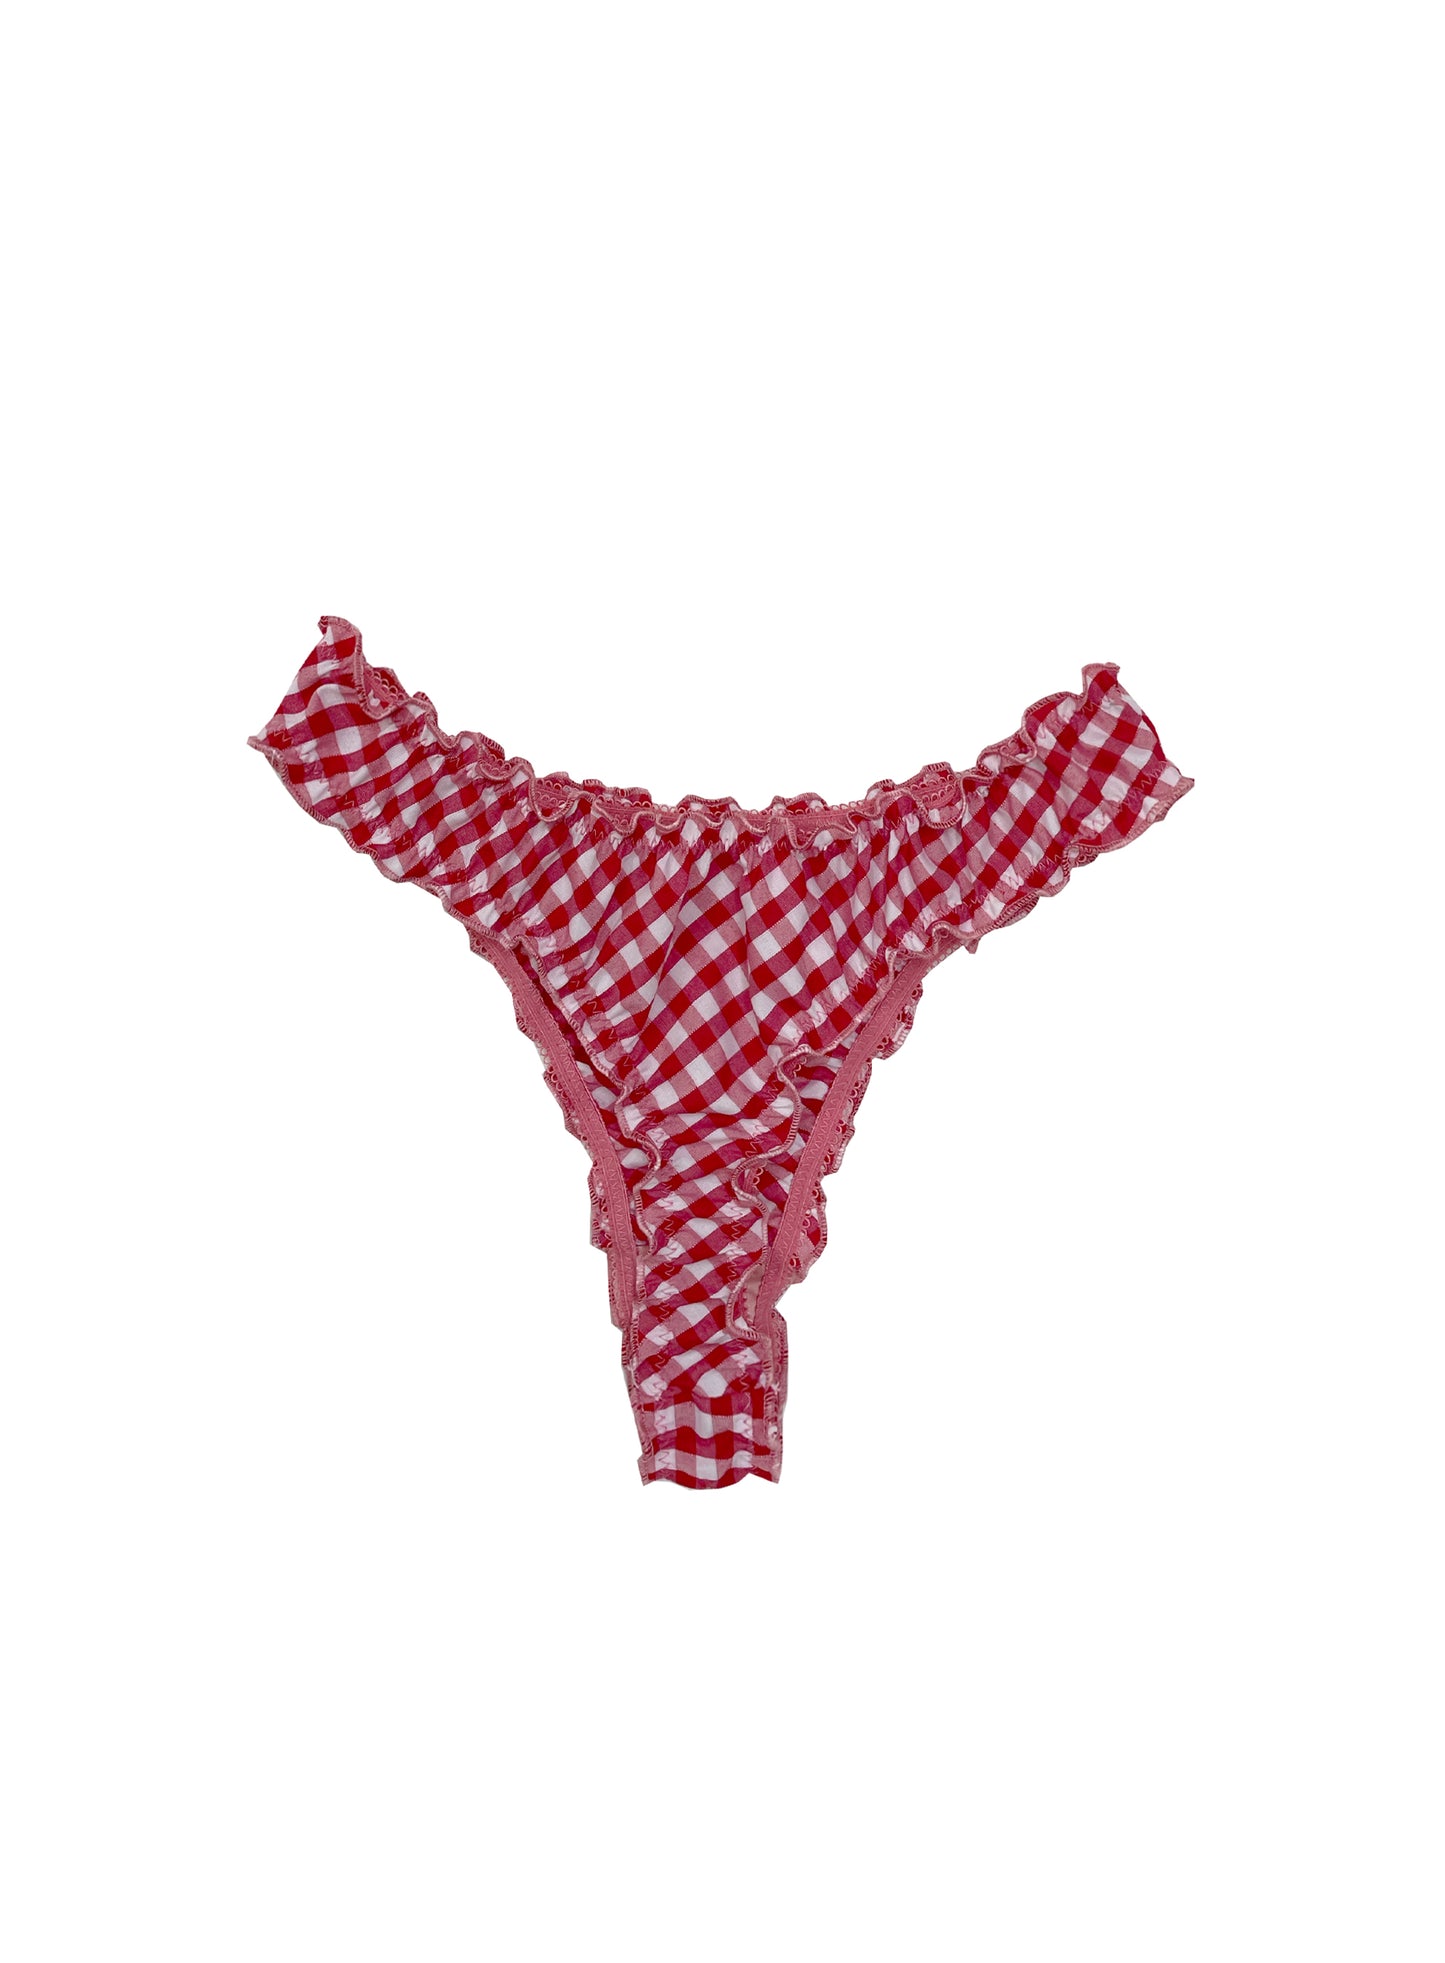 red gingham underwear